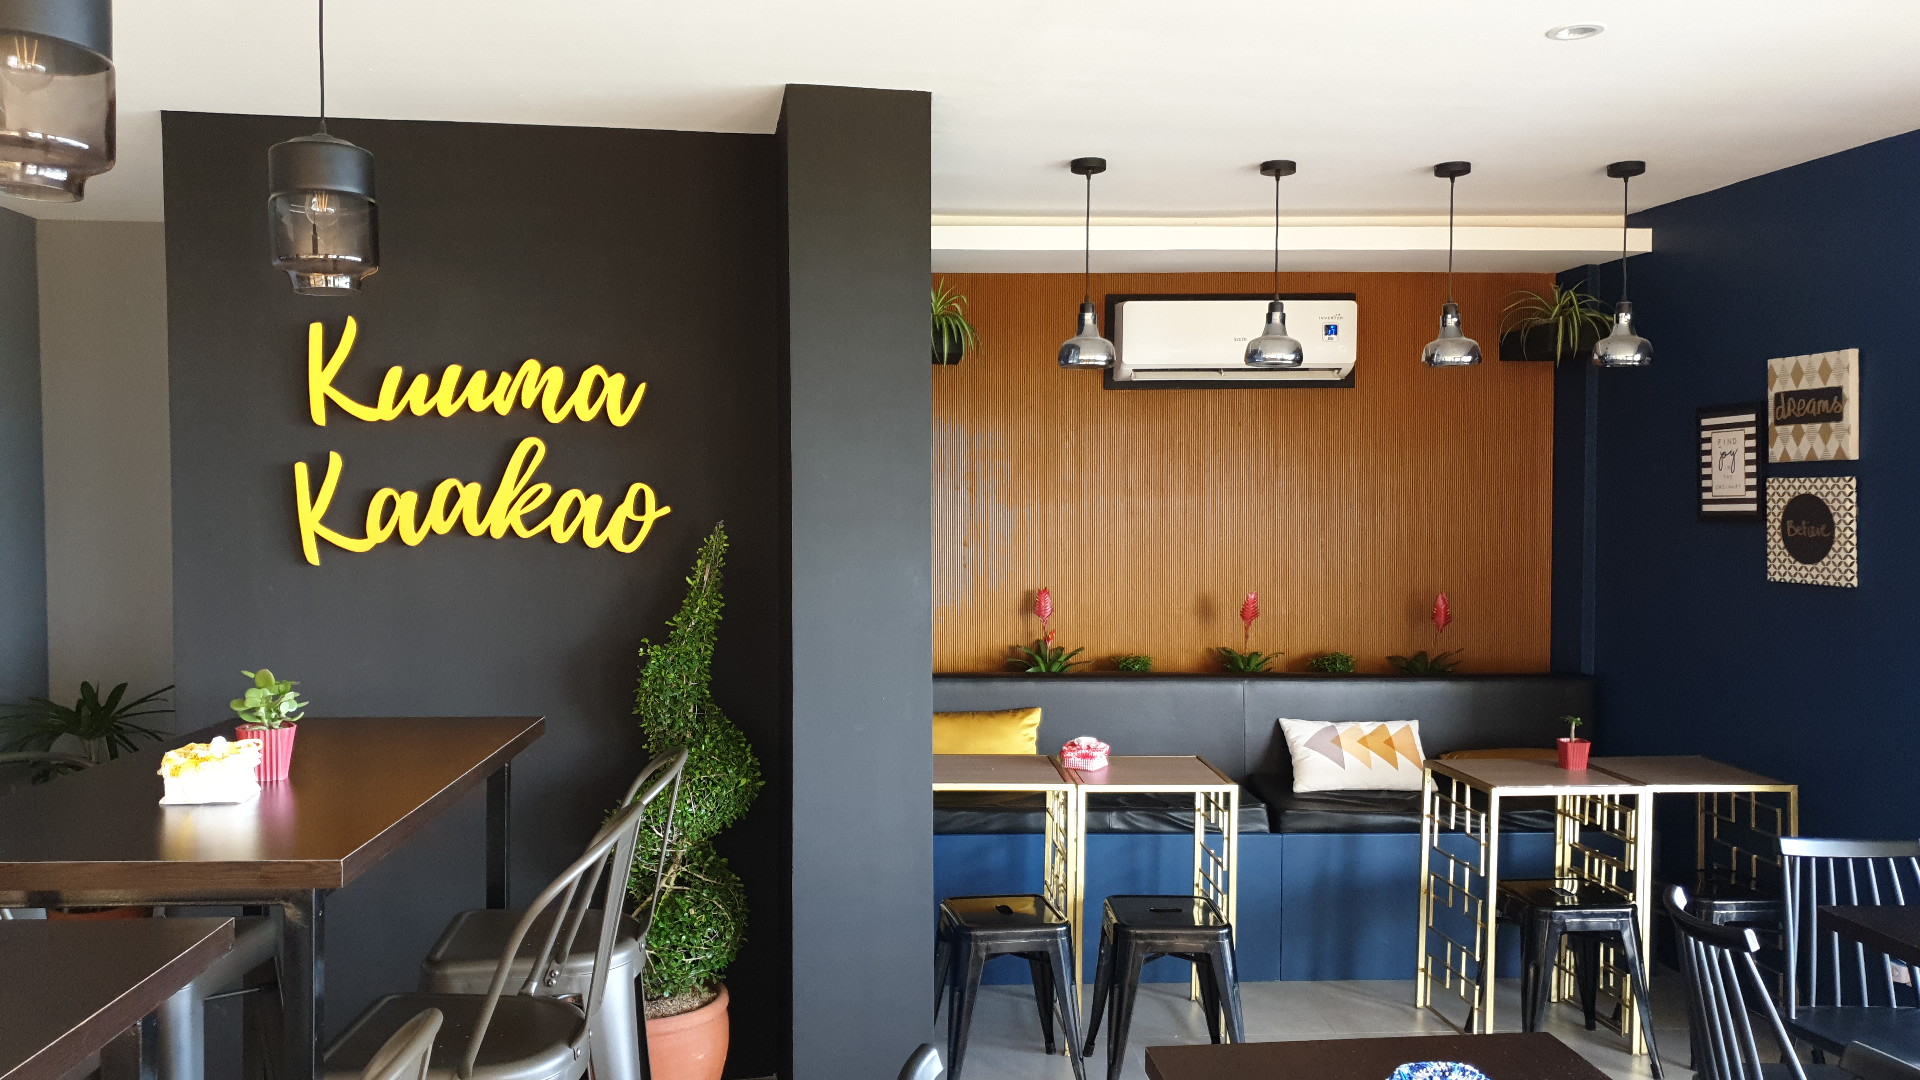 Kuuma Kaakao Kaffe in Tagaytay - sleek style and wood